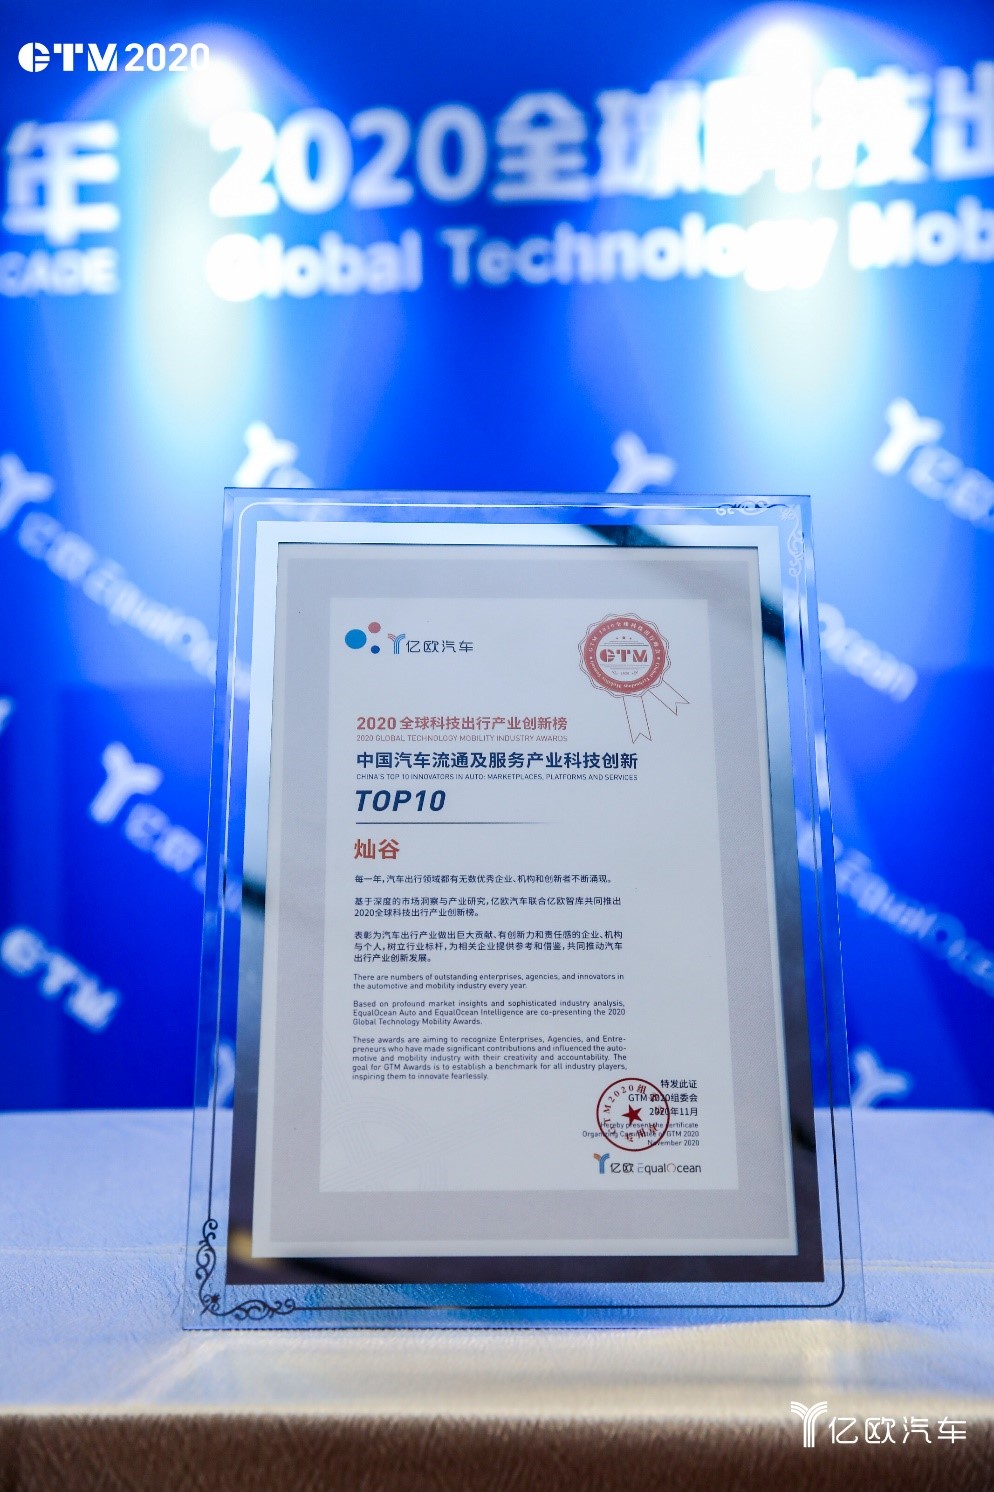 灿谷名列“2020中国汽车流通及服务产业科技创新TOP10”榜单